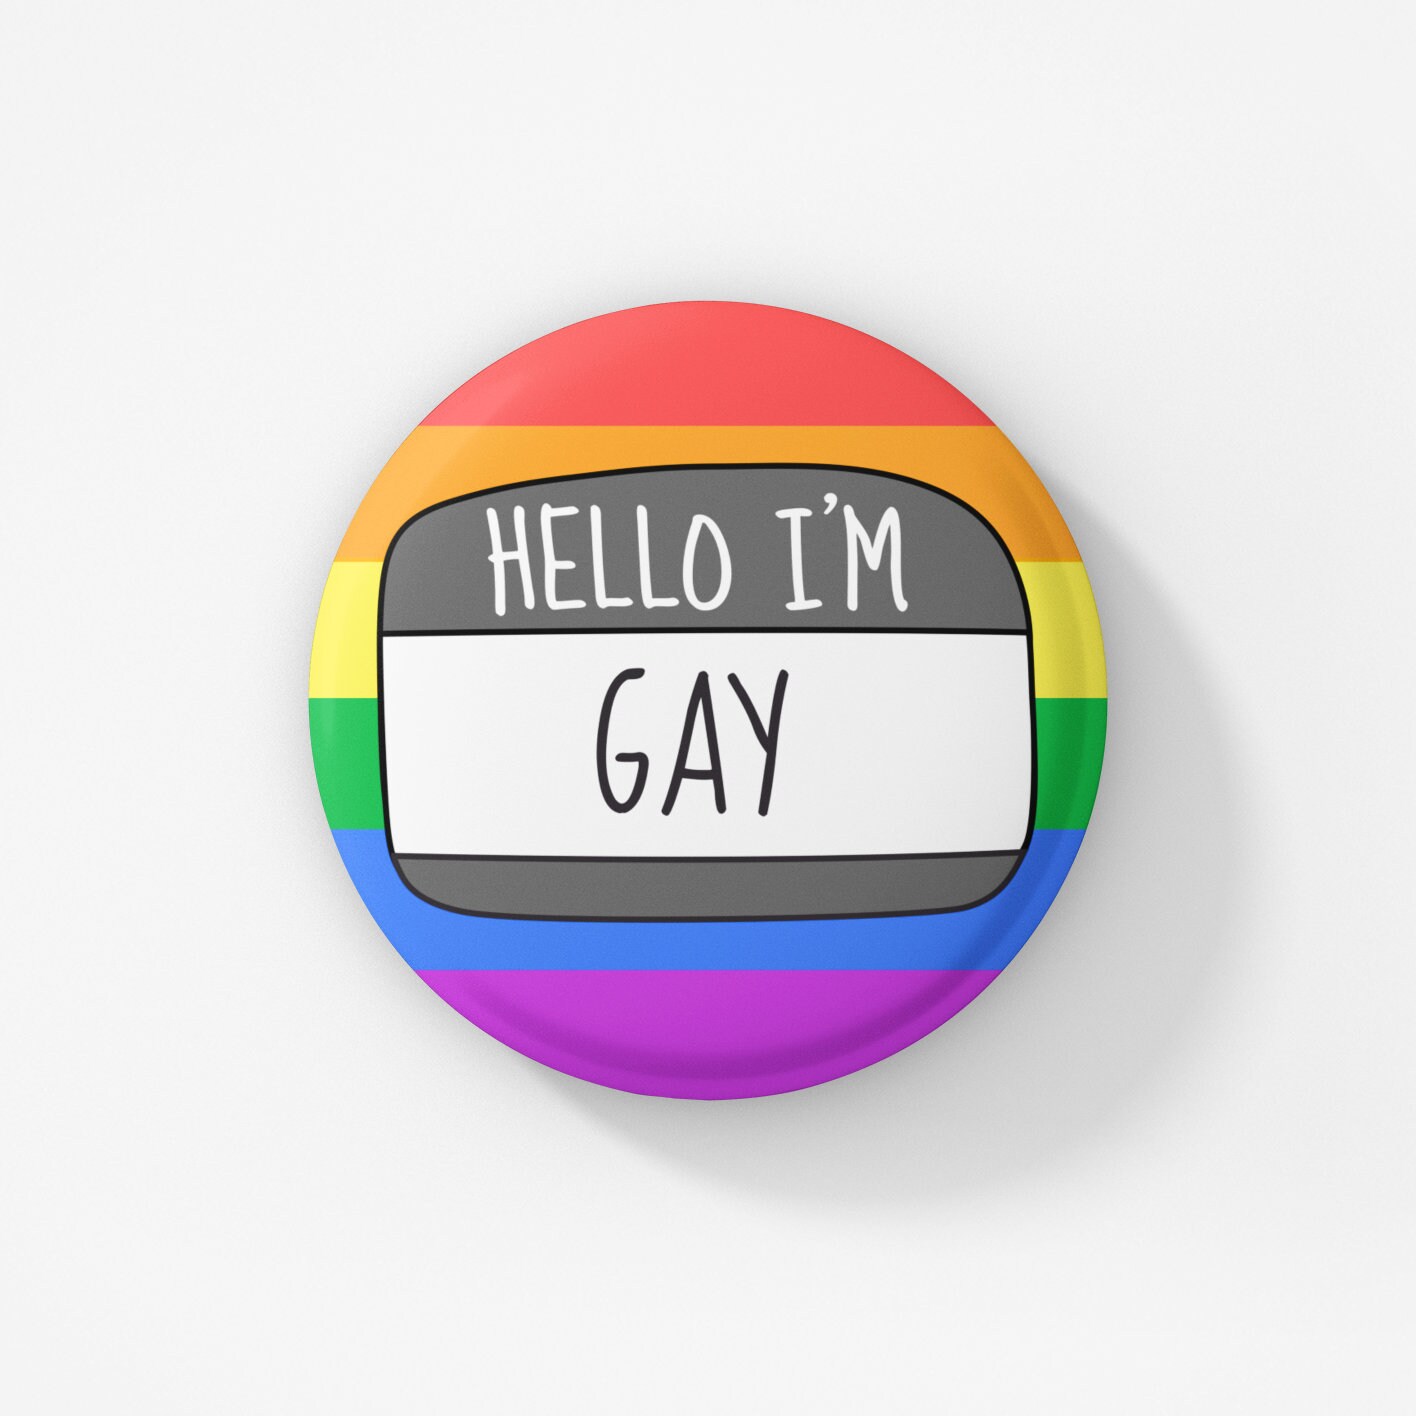 Hello I'm Gay Badge Pin / LGBT Badge LGBT Pride Gay | Etsy